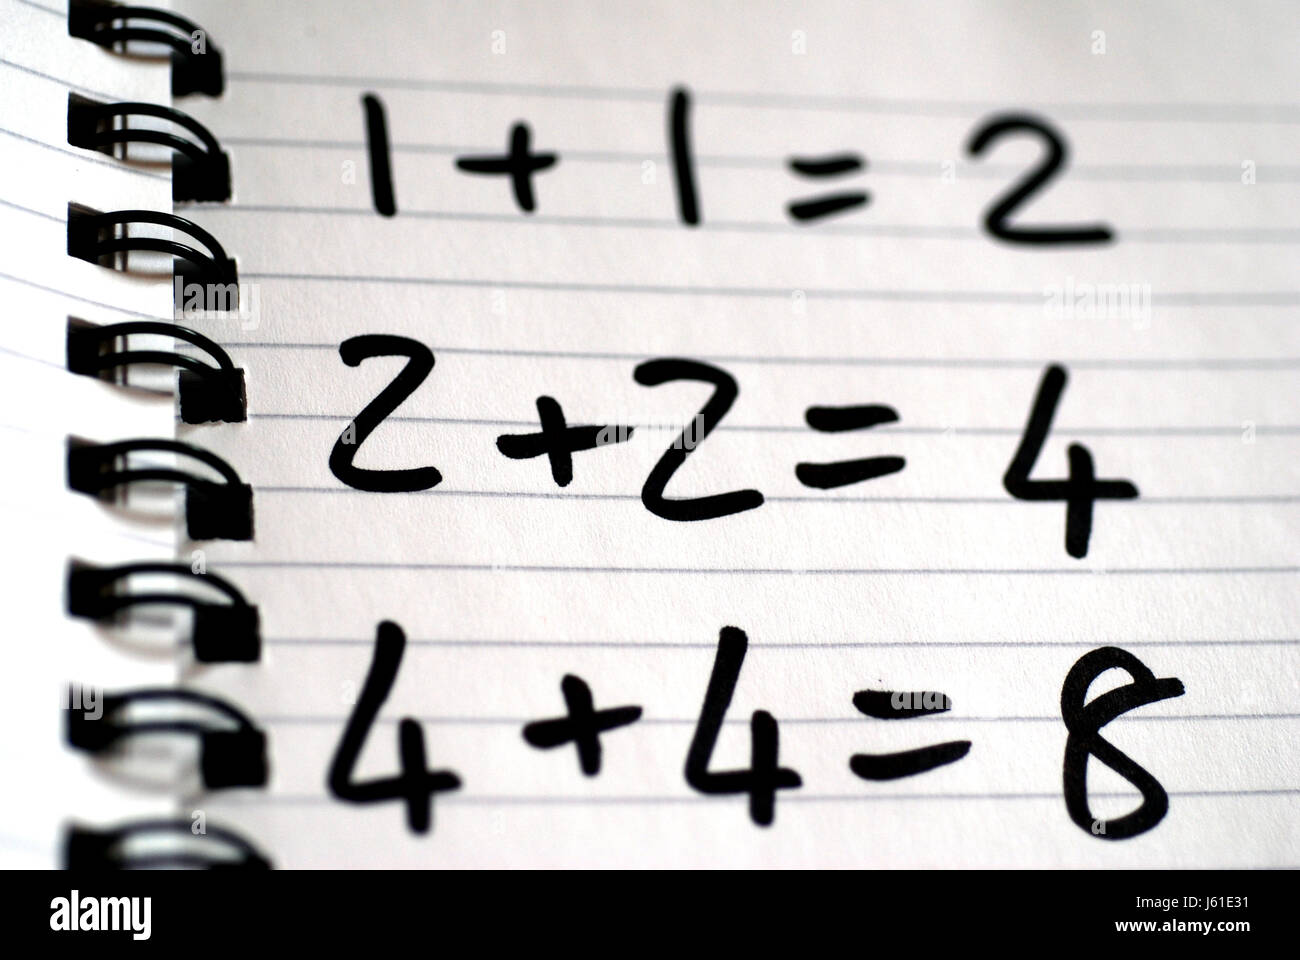 Mathématiques mathématiques plus écrire les numéros de portable écrit écrit écrit font Banque D'Images